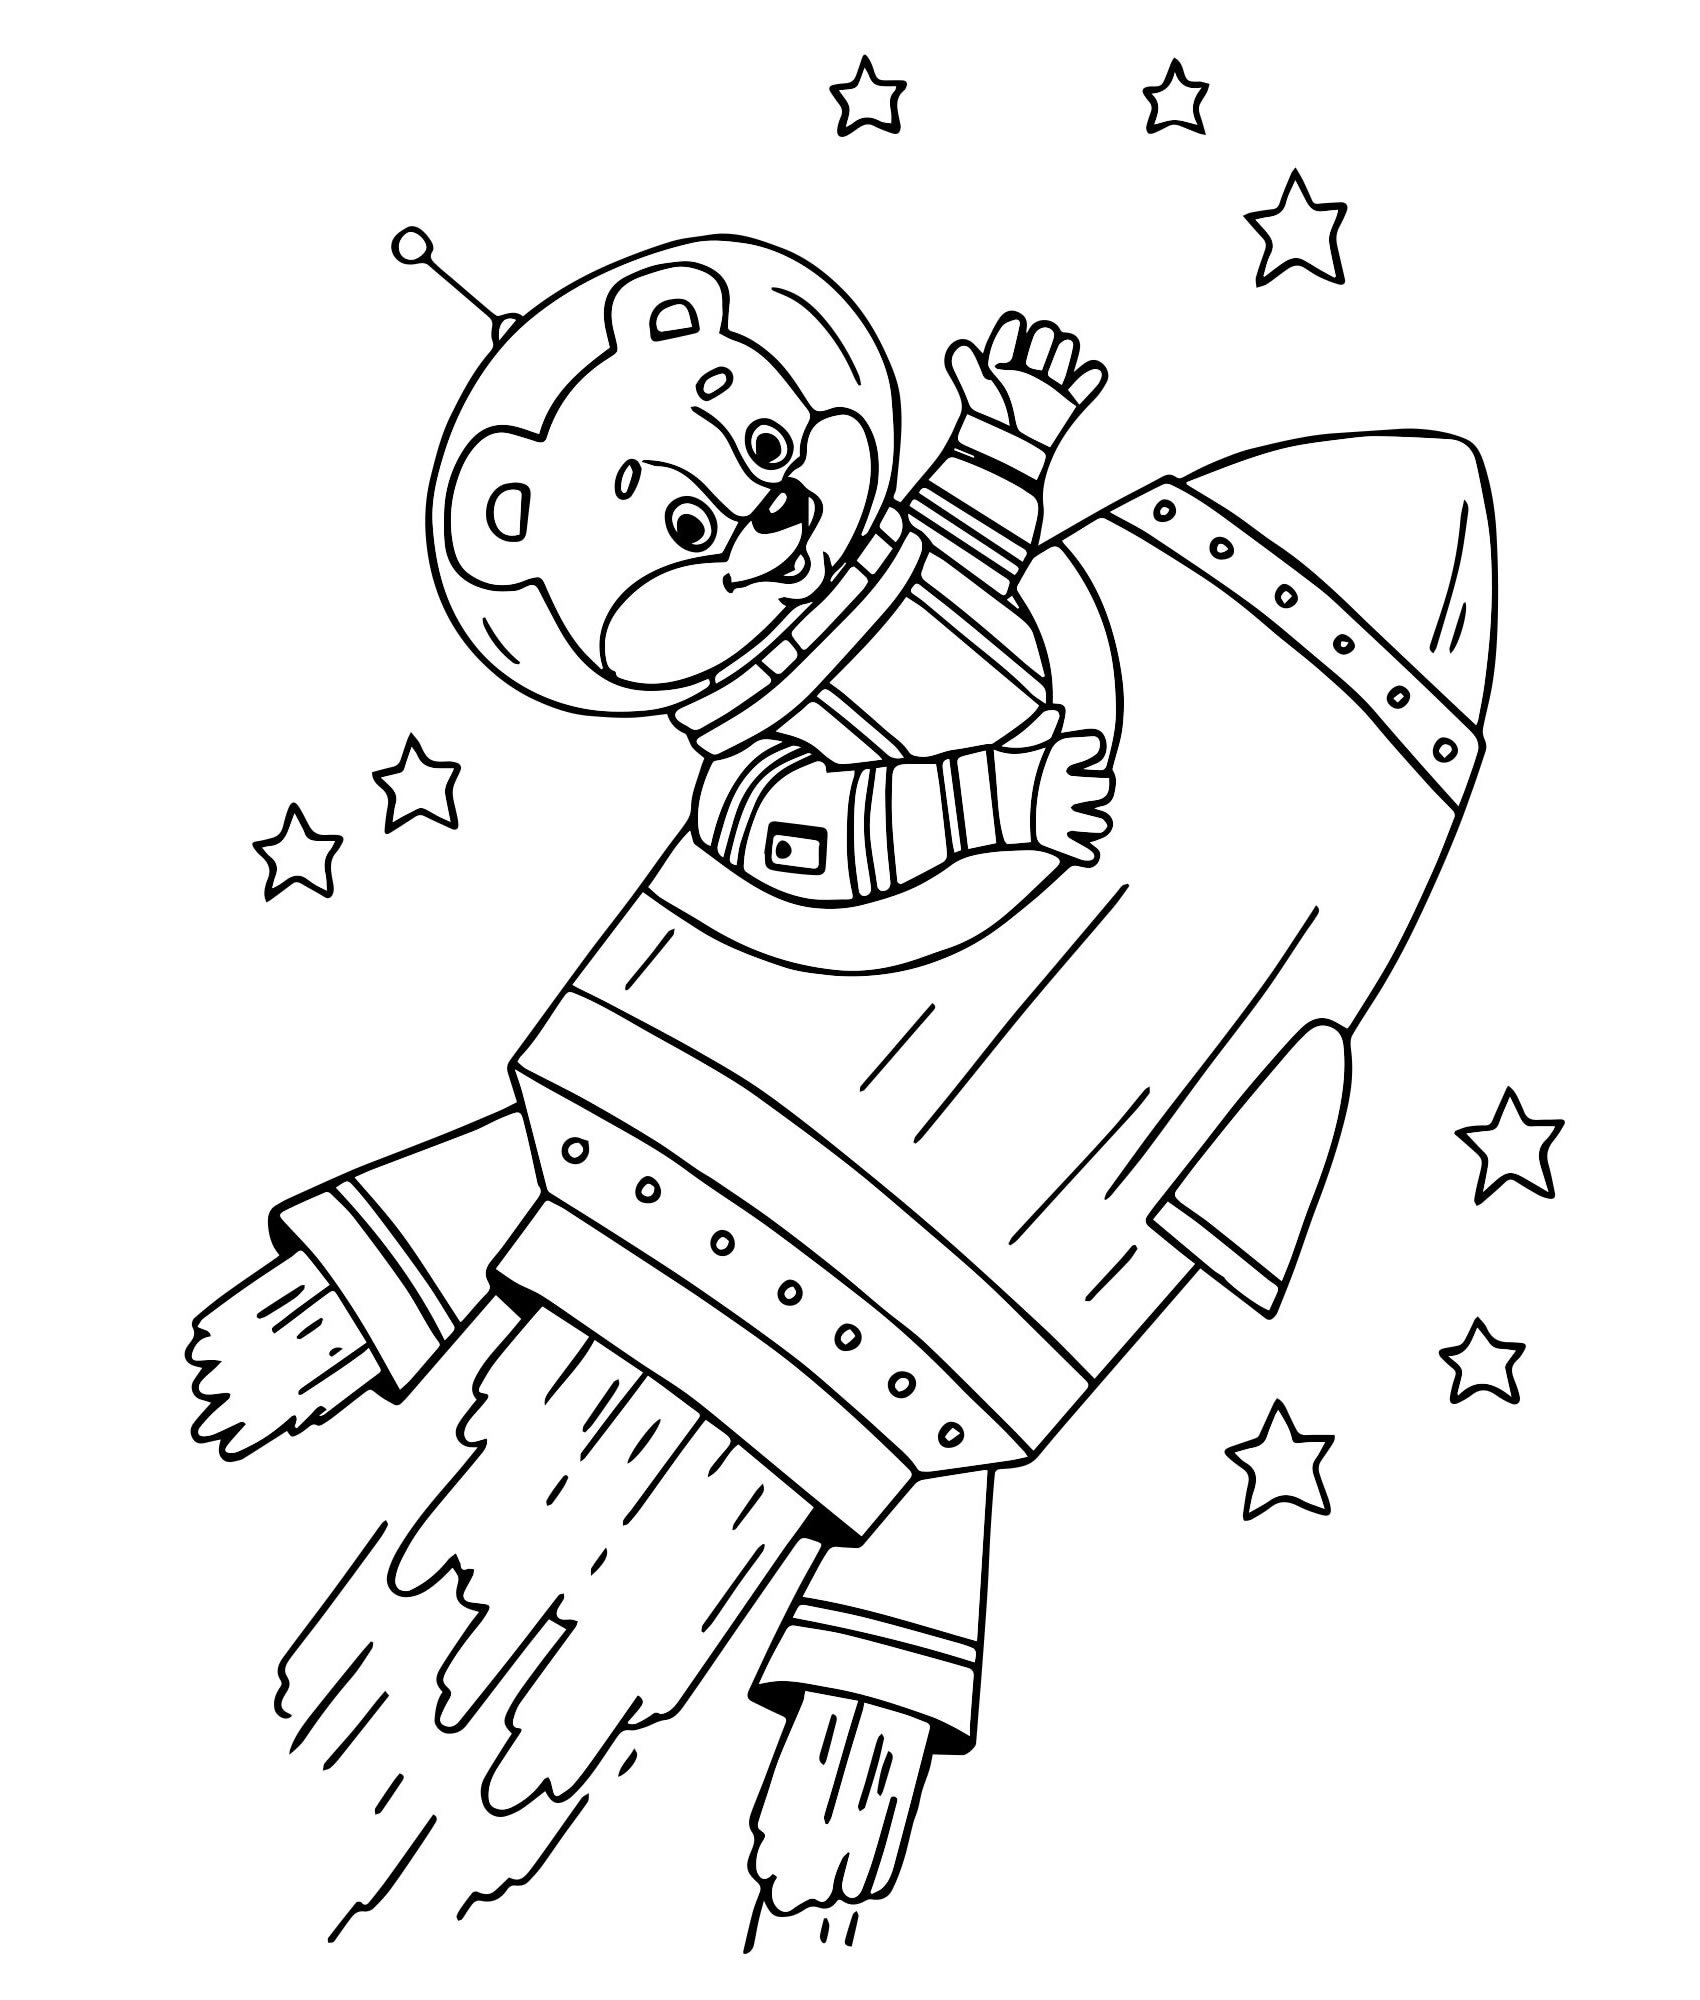 Трафареты ко дню космонавтики. Раскраска. В космосе. Космонавт раскраска для детей. Раскраски ко Дню космонавтики. Космос раскраска для детей.